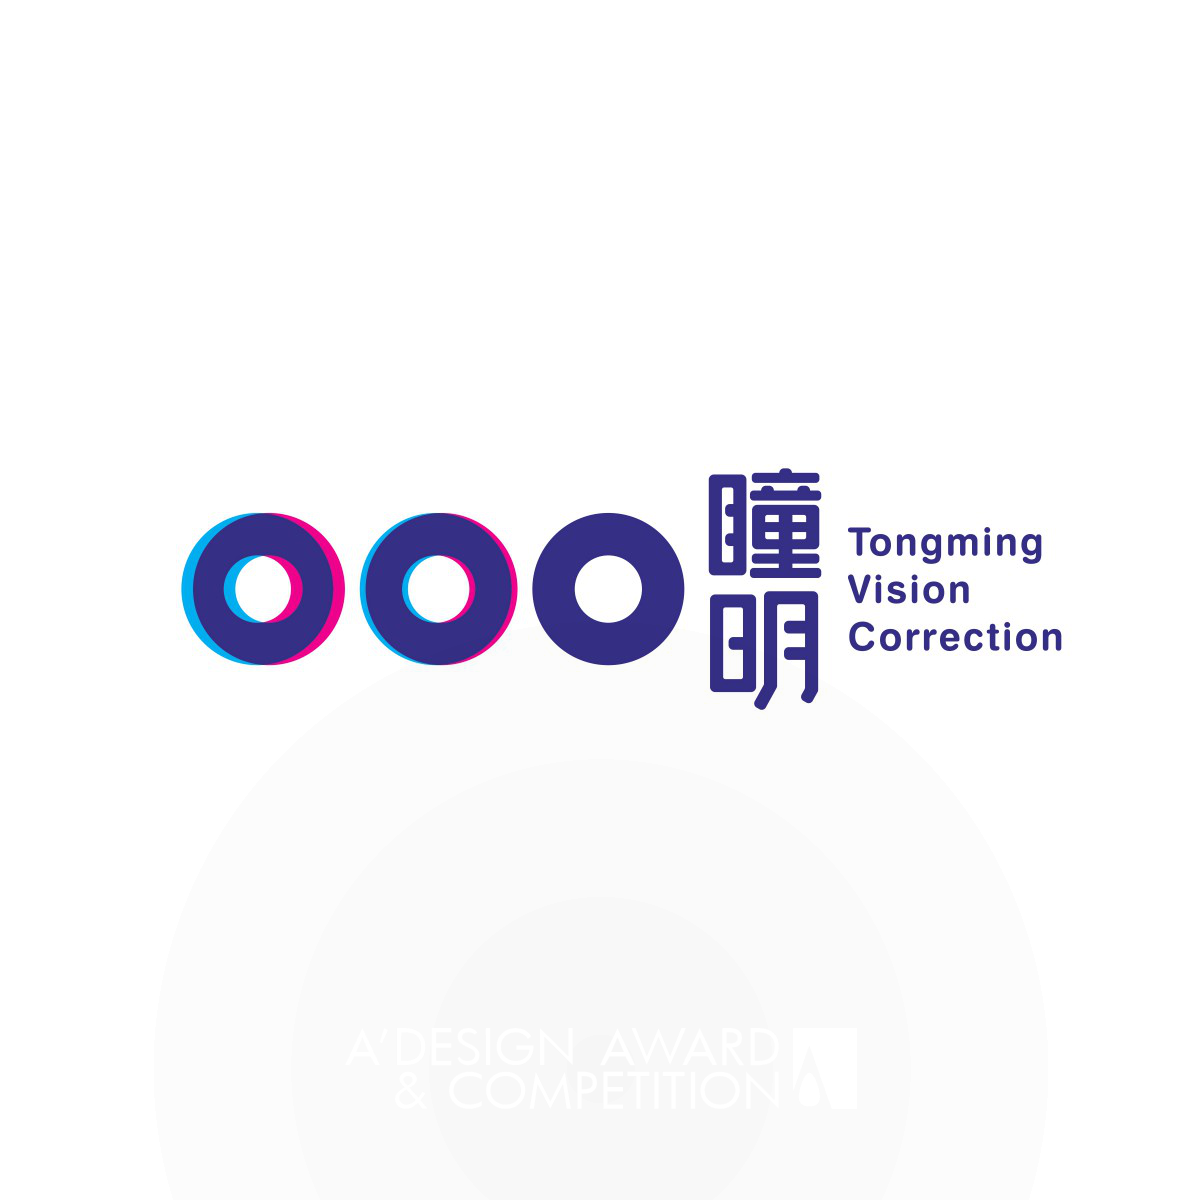 Tongming Vision Correction Logo